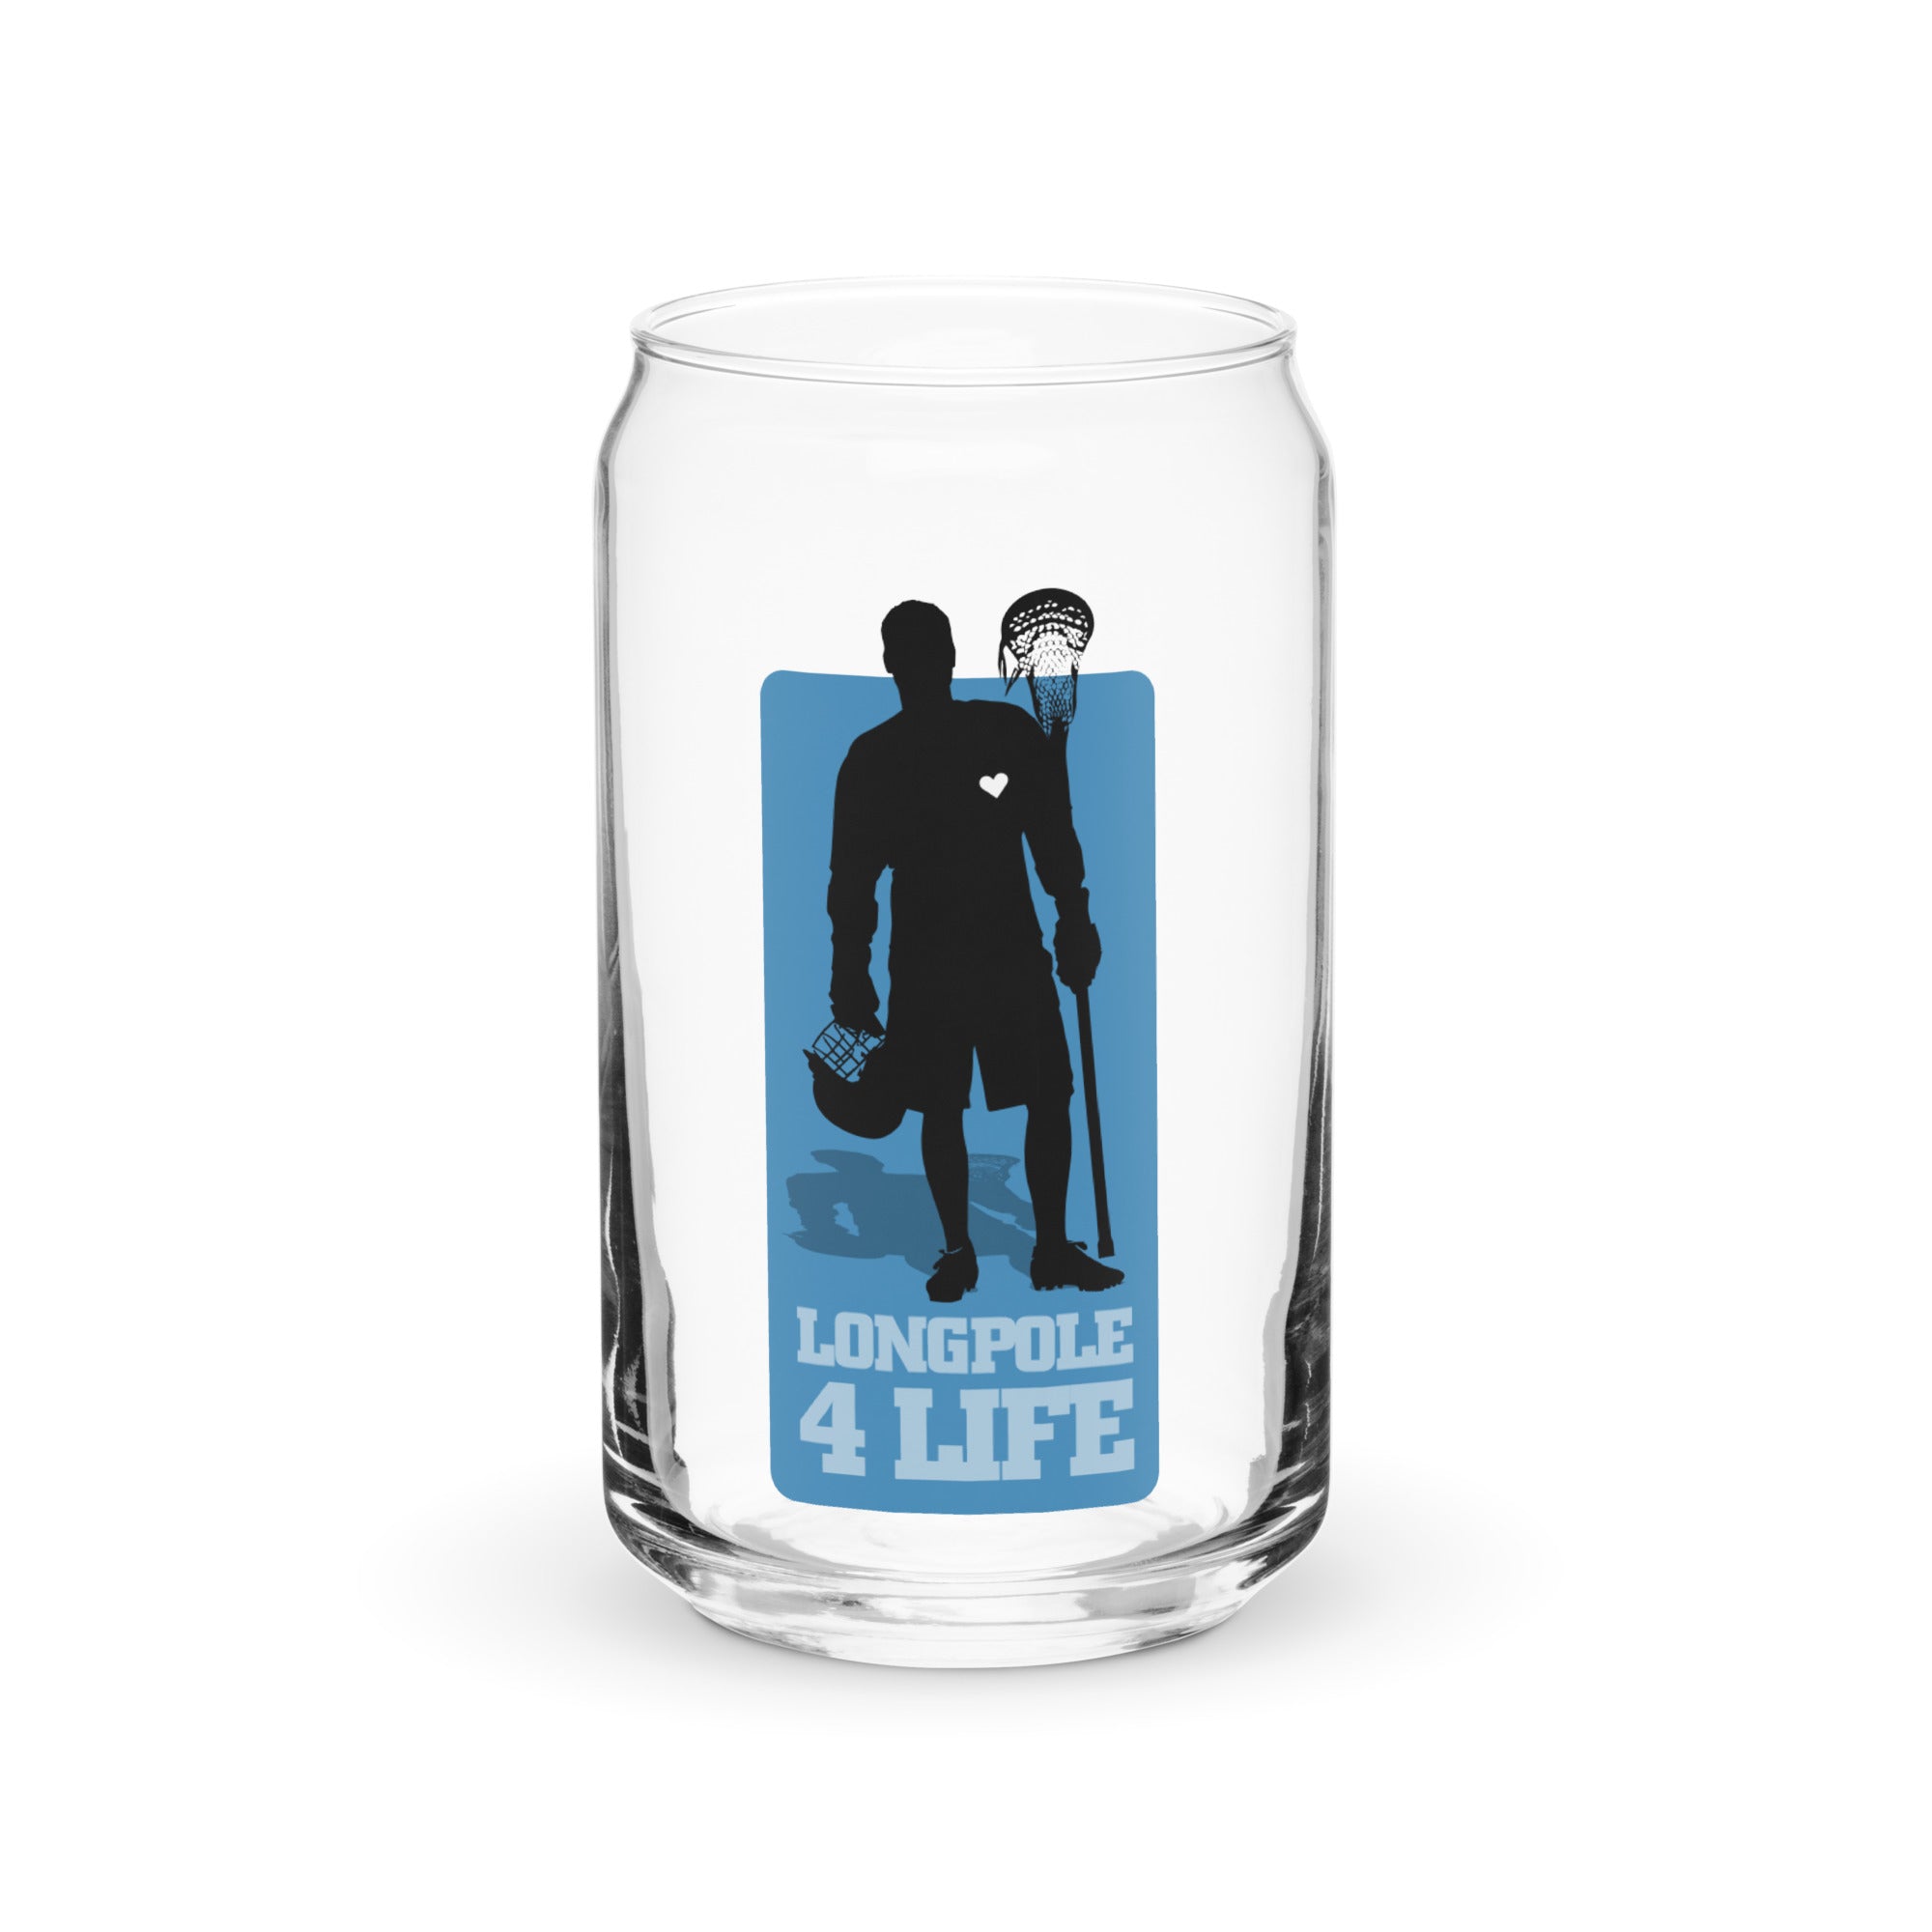 "Longpole 4 Life" Can-shaped glass